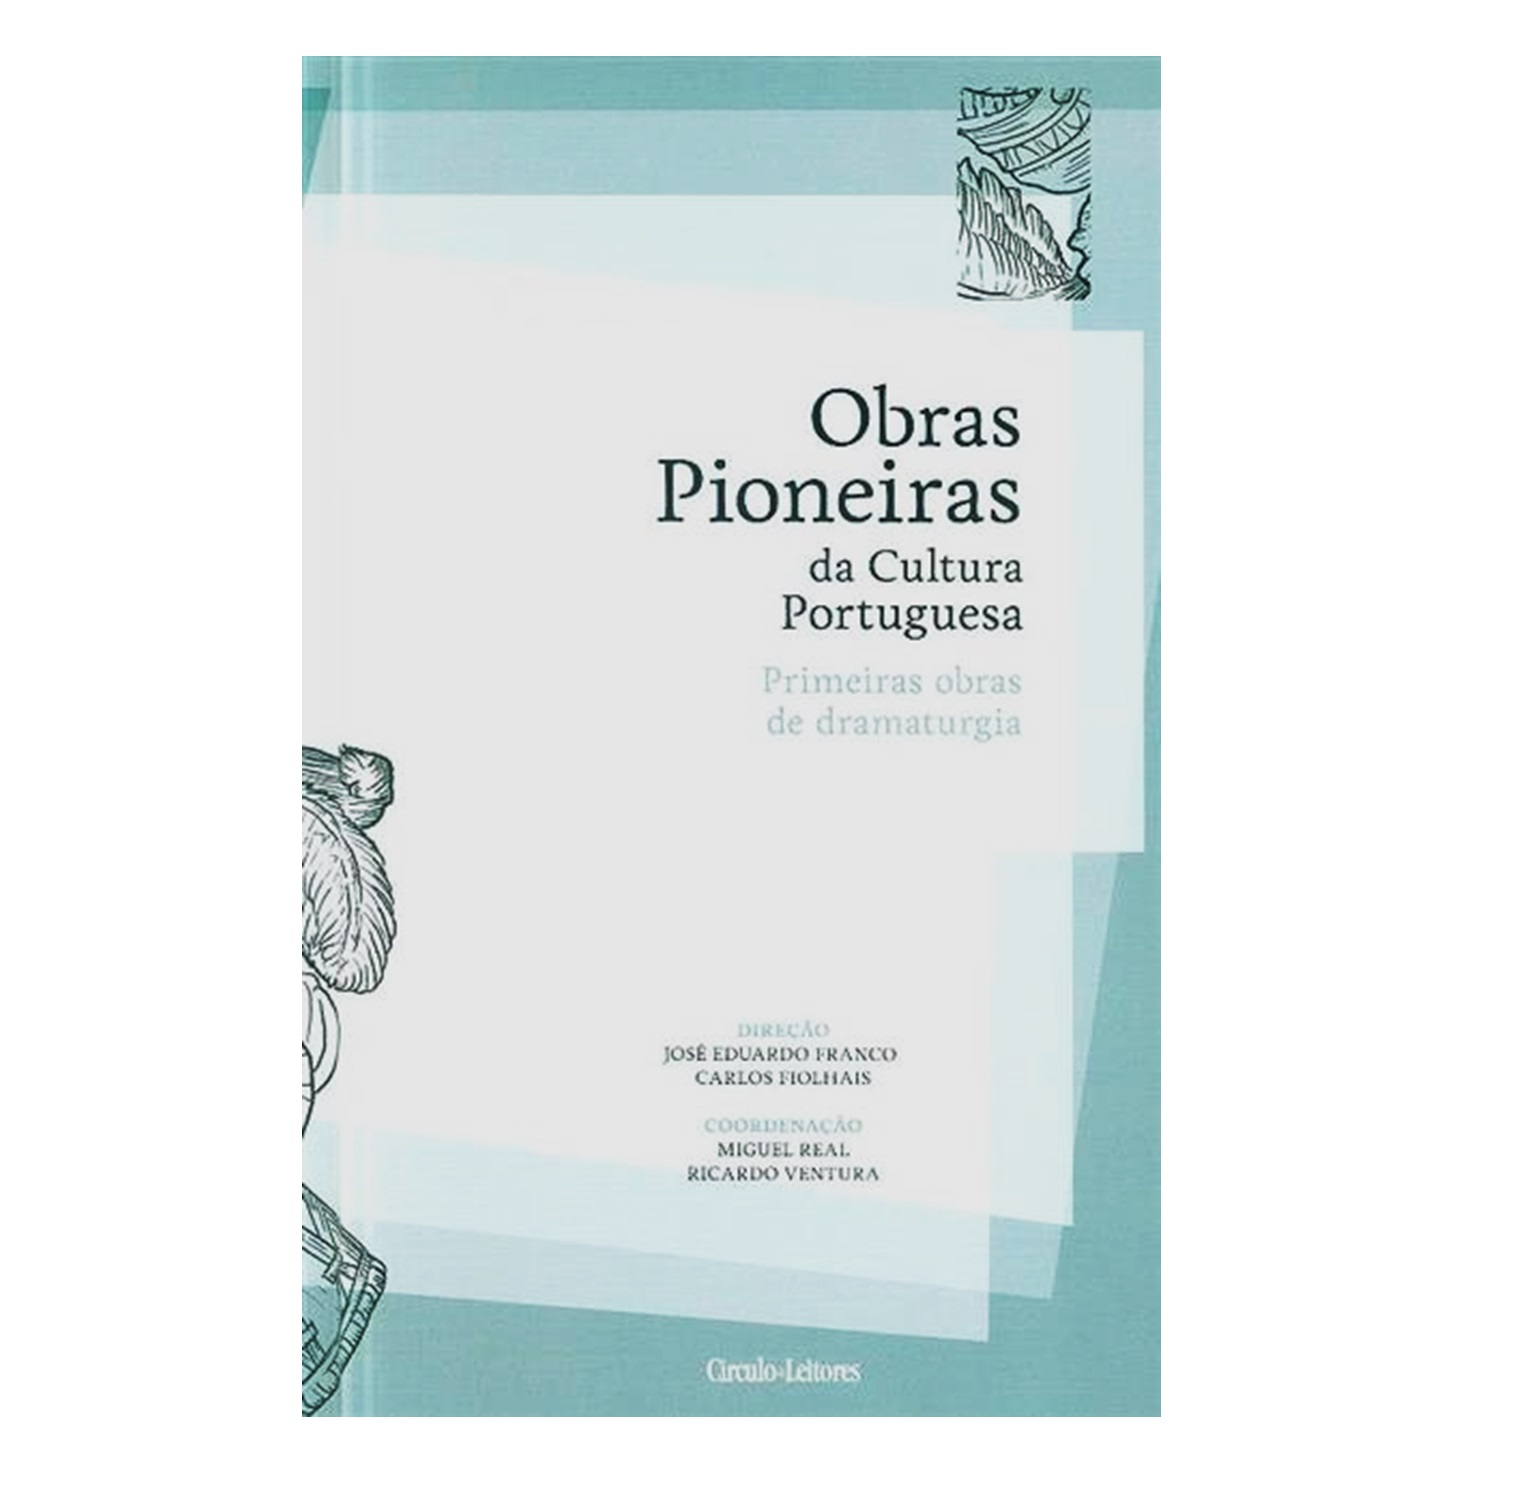 Obras Pioneiras da Cultura Portuguesa: primeiras obras de dramaturgia